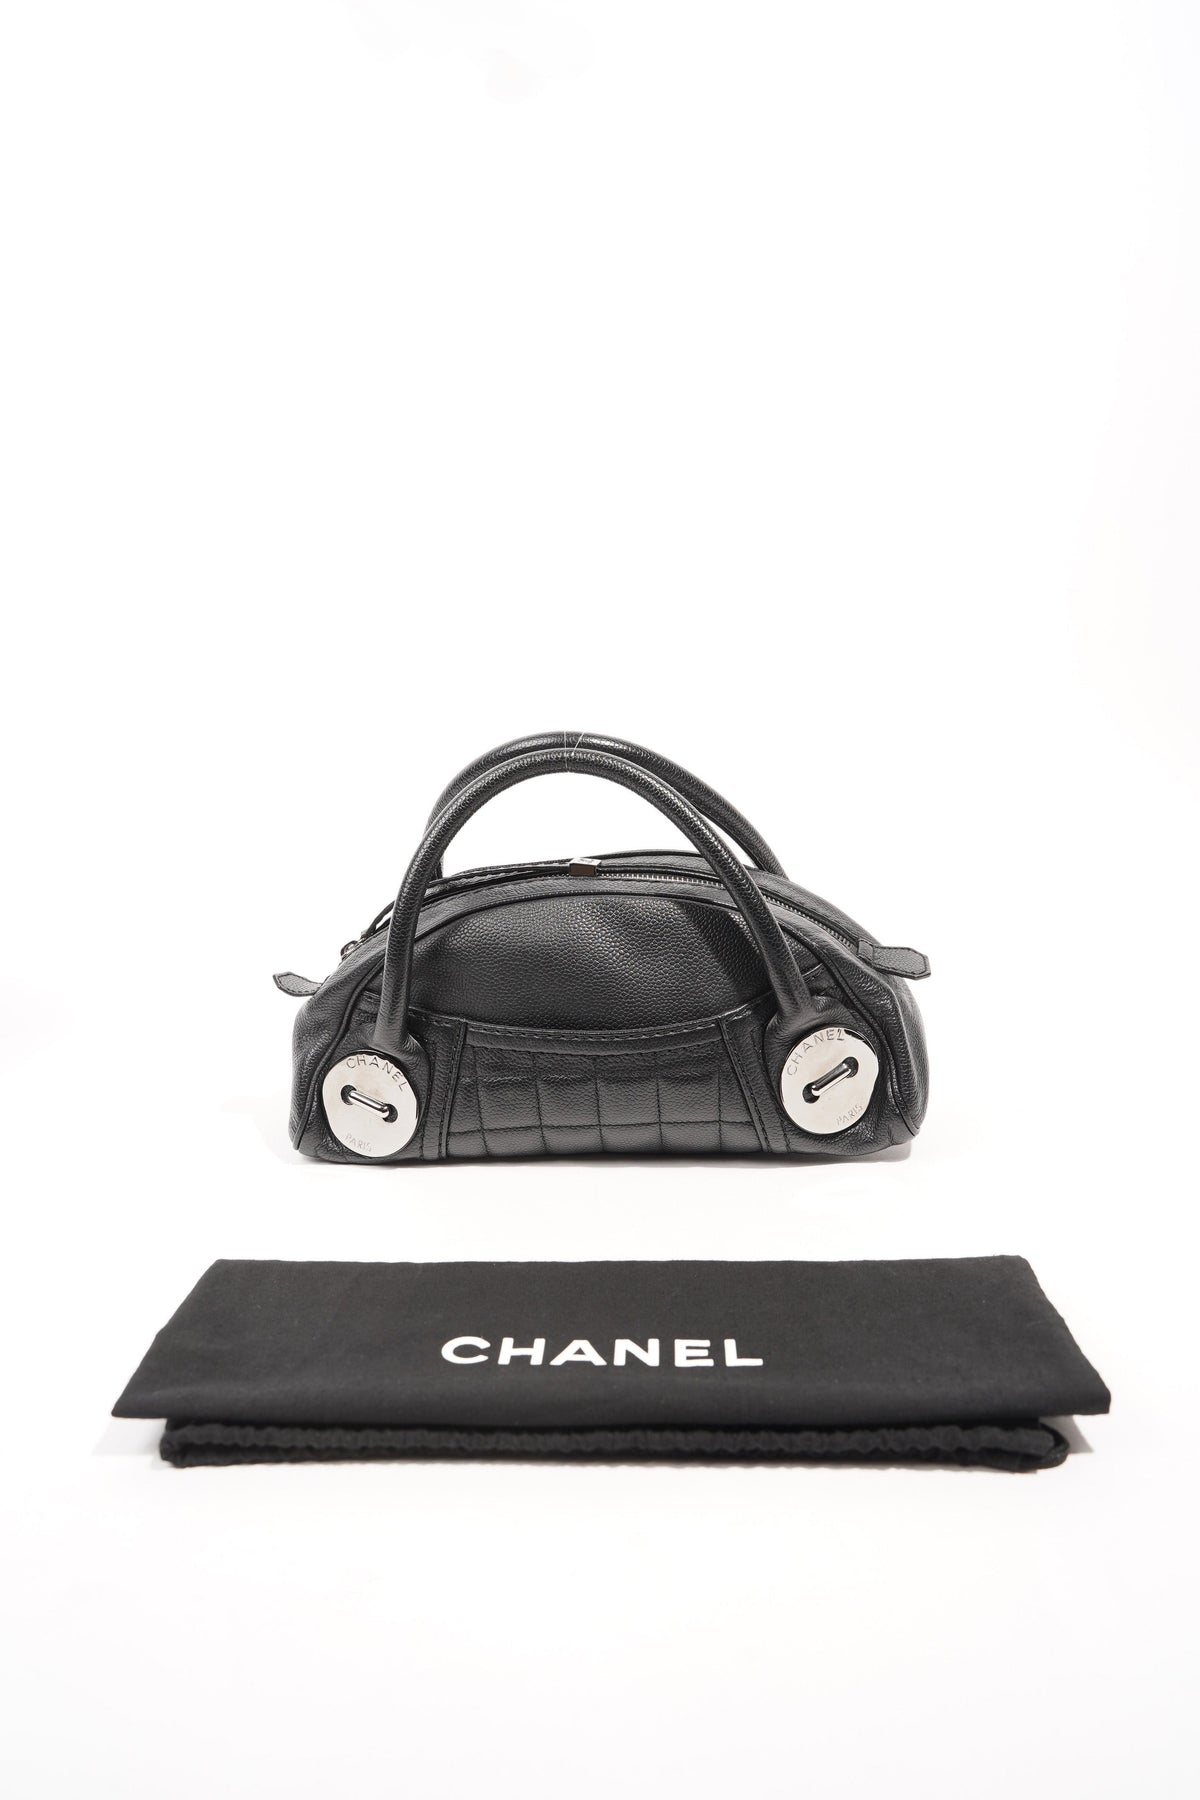 Chanel AS3229B08008 Mini Bowling Bag